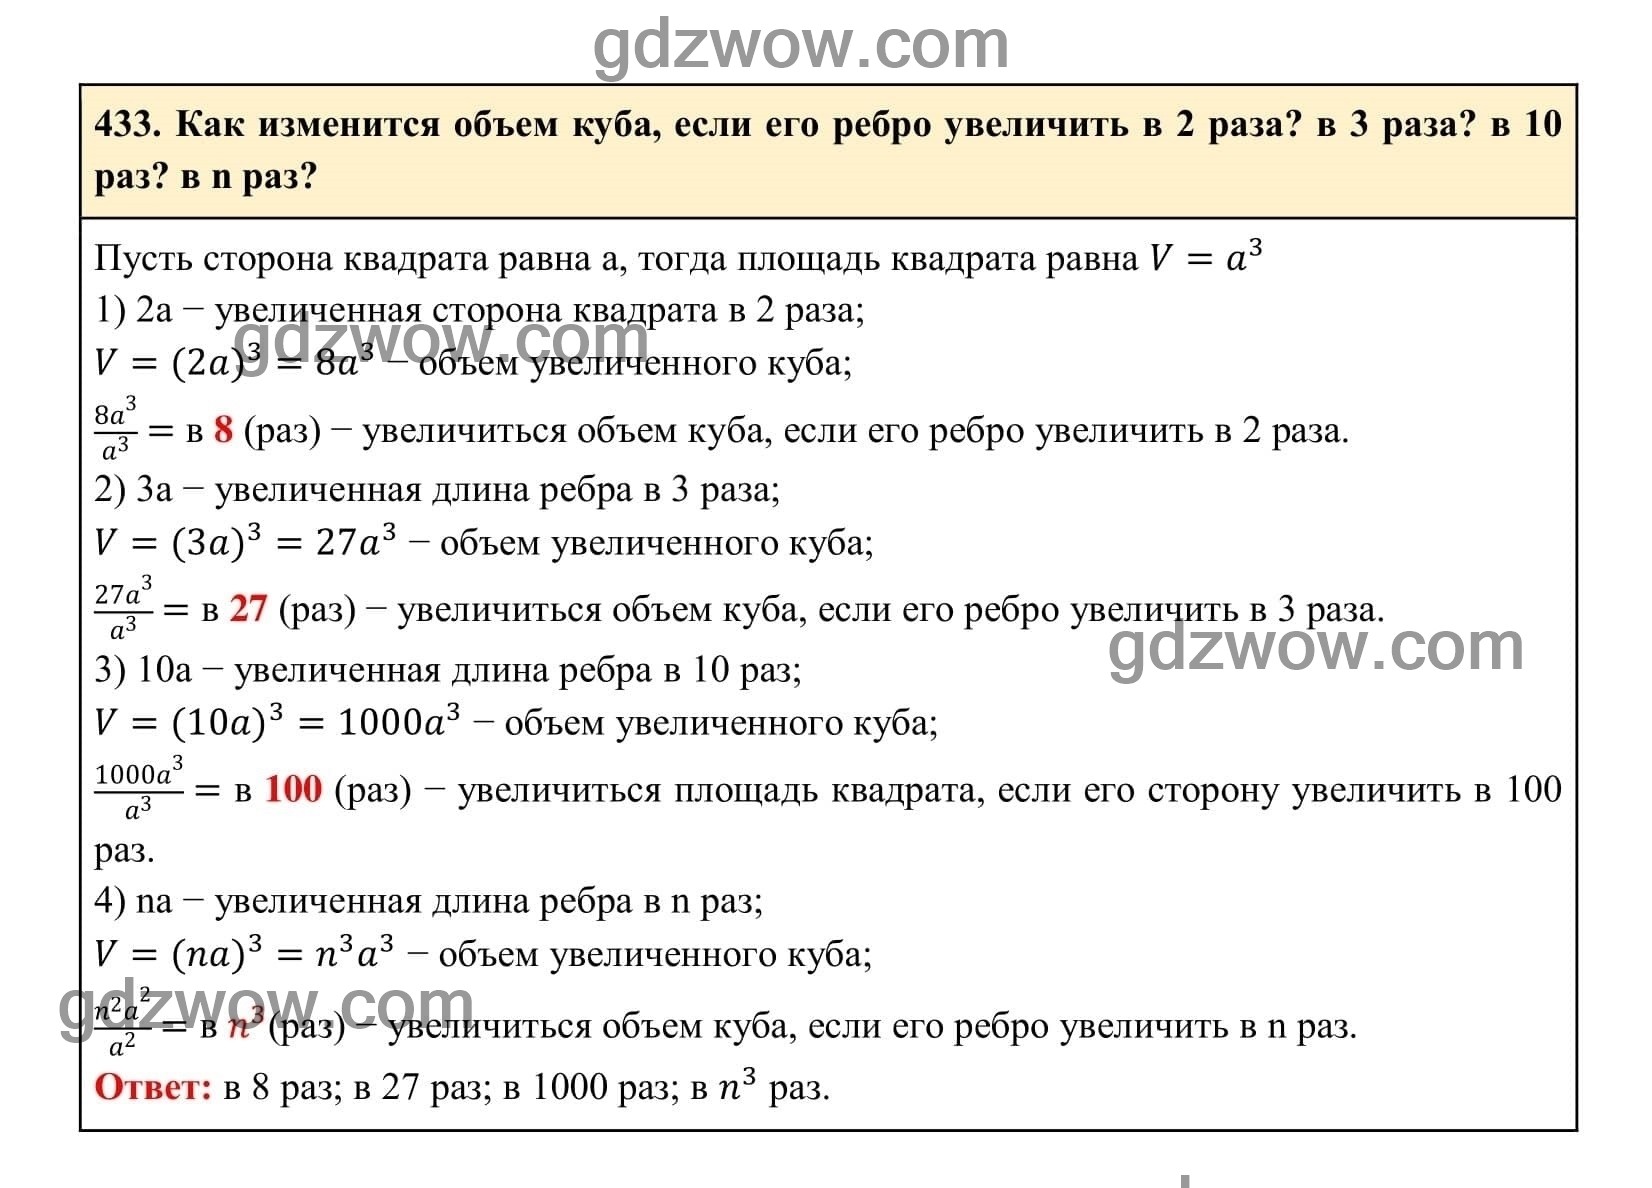 Упражнение 433 - ГДЗ по Алгебре 7 класс Учебник Макарычев (решебник) - GDZwow